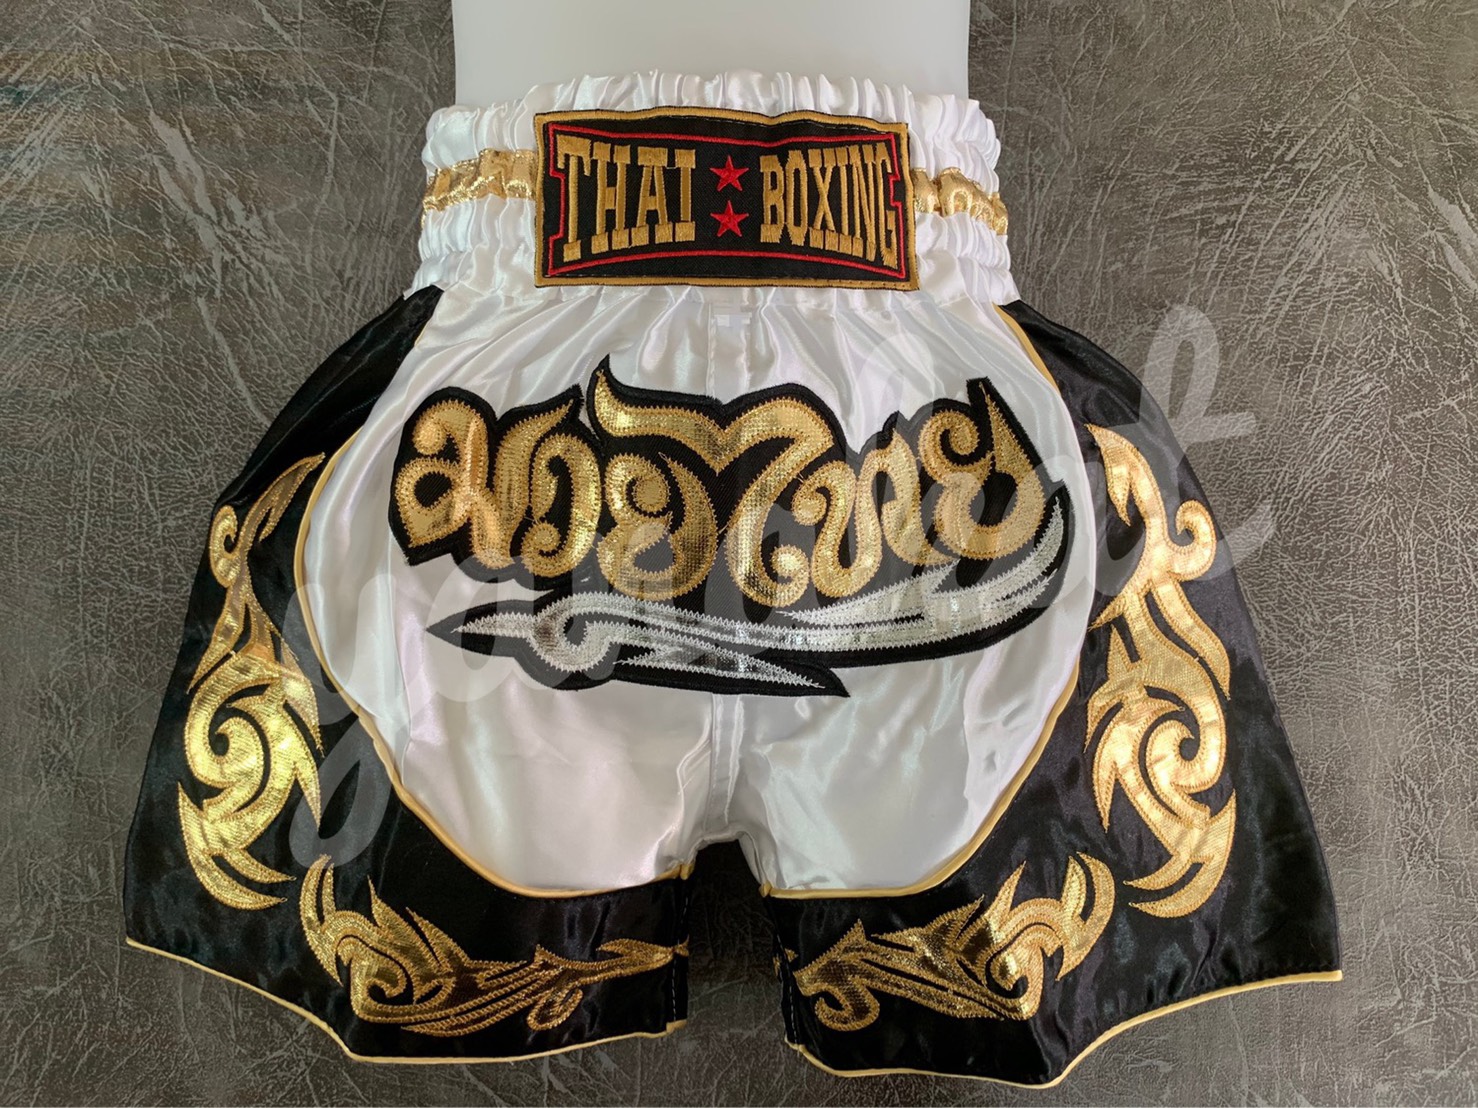 กางเกงมวย กางเกงมวยไทย ปักลายกนกทอง ไซส์ผู้ใหญ่ ผ้าซาติน Kick Boxing Shorts ไซส์ M-XXXL สีขาว